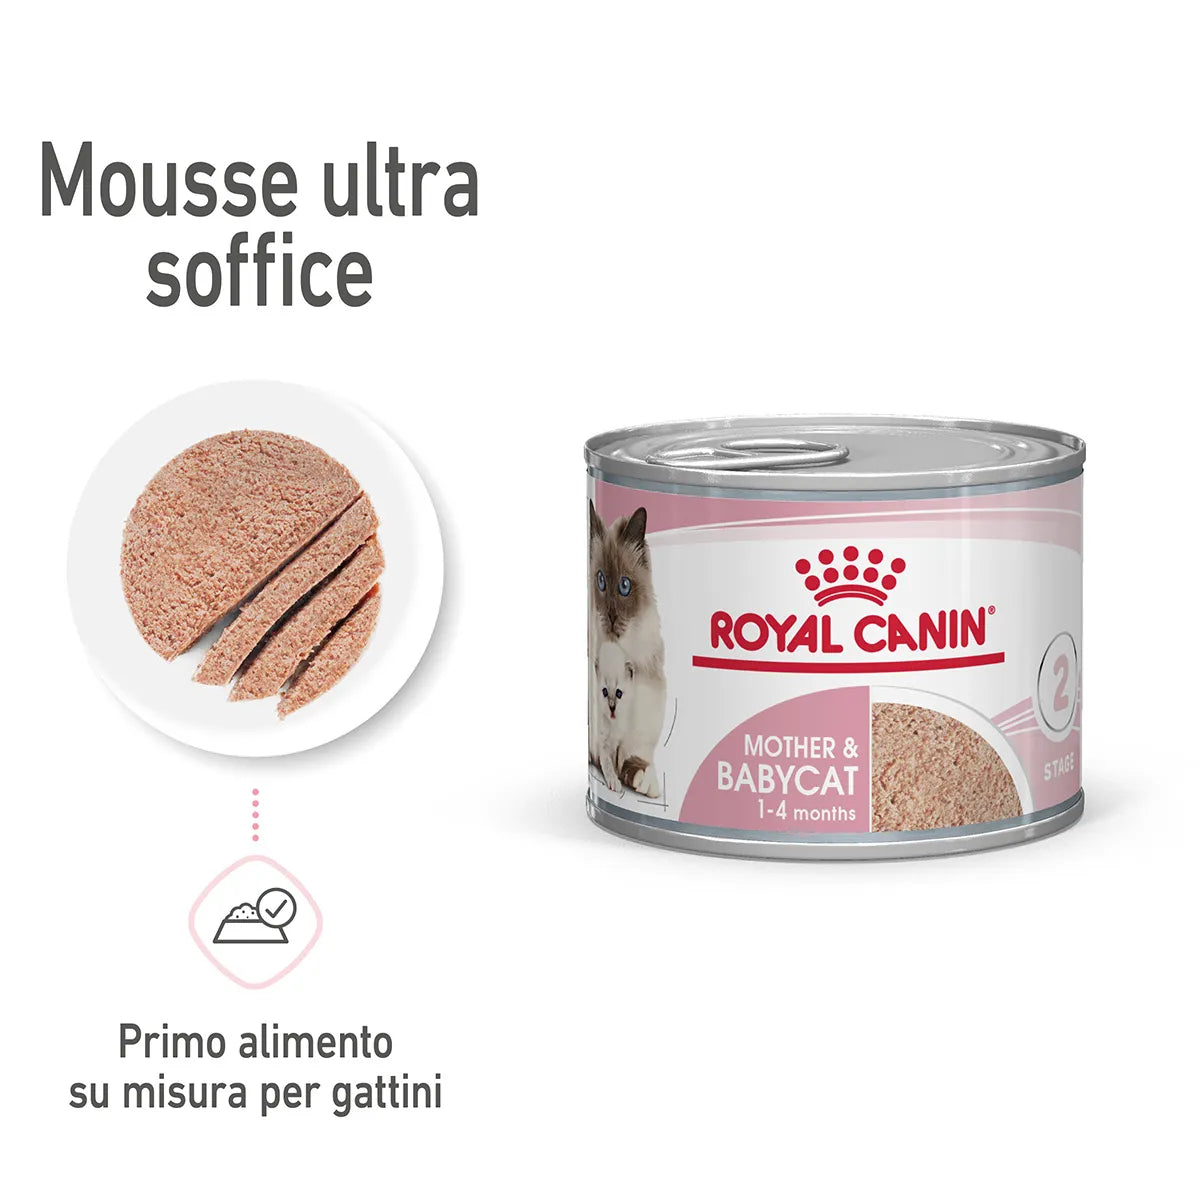 Royal Canin - Mother & Babycat Mousse ultra soffice - Gatte e gattini - 195gr